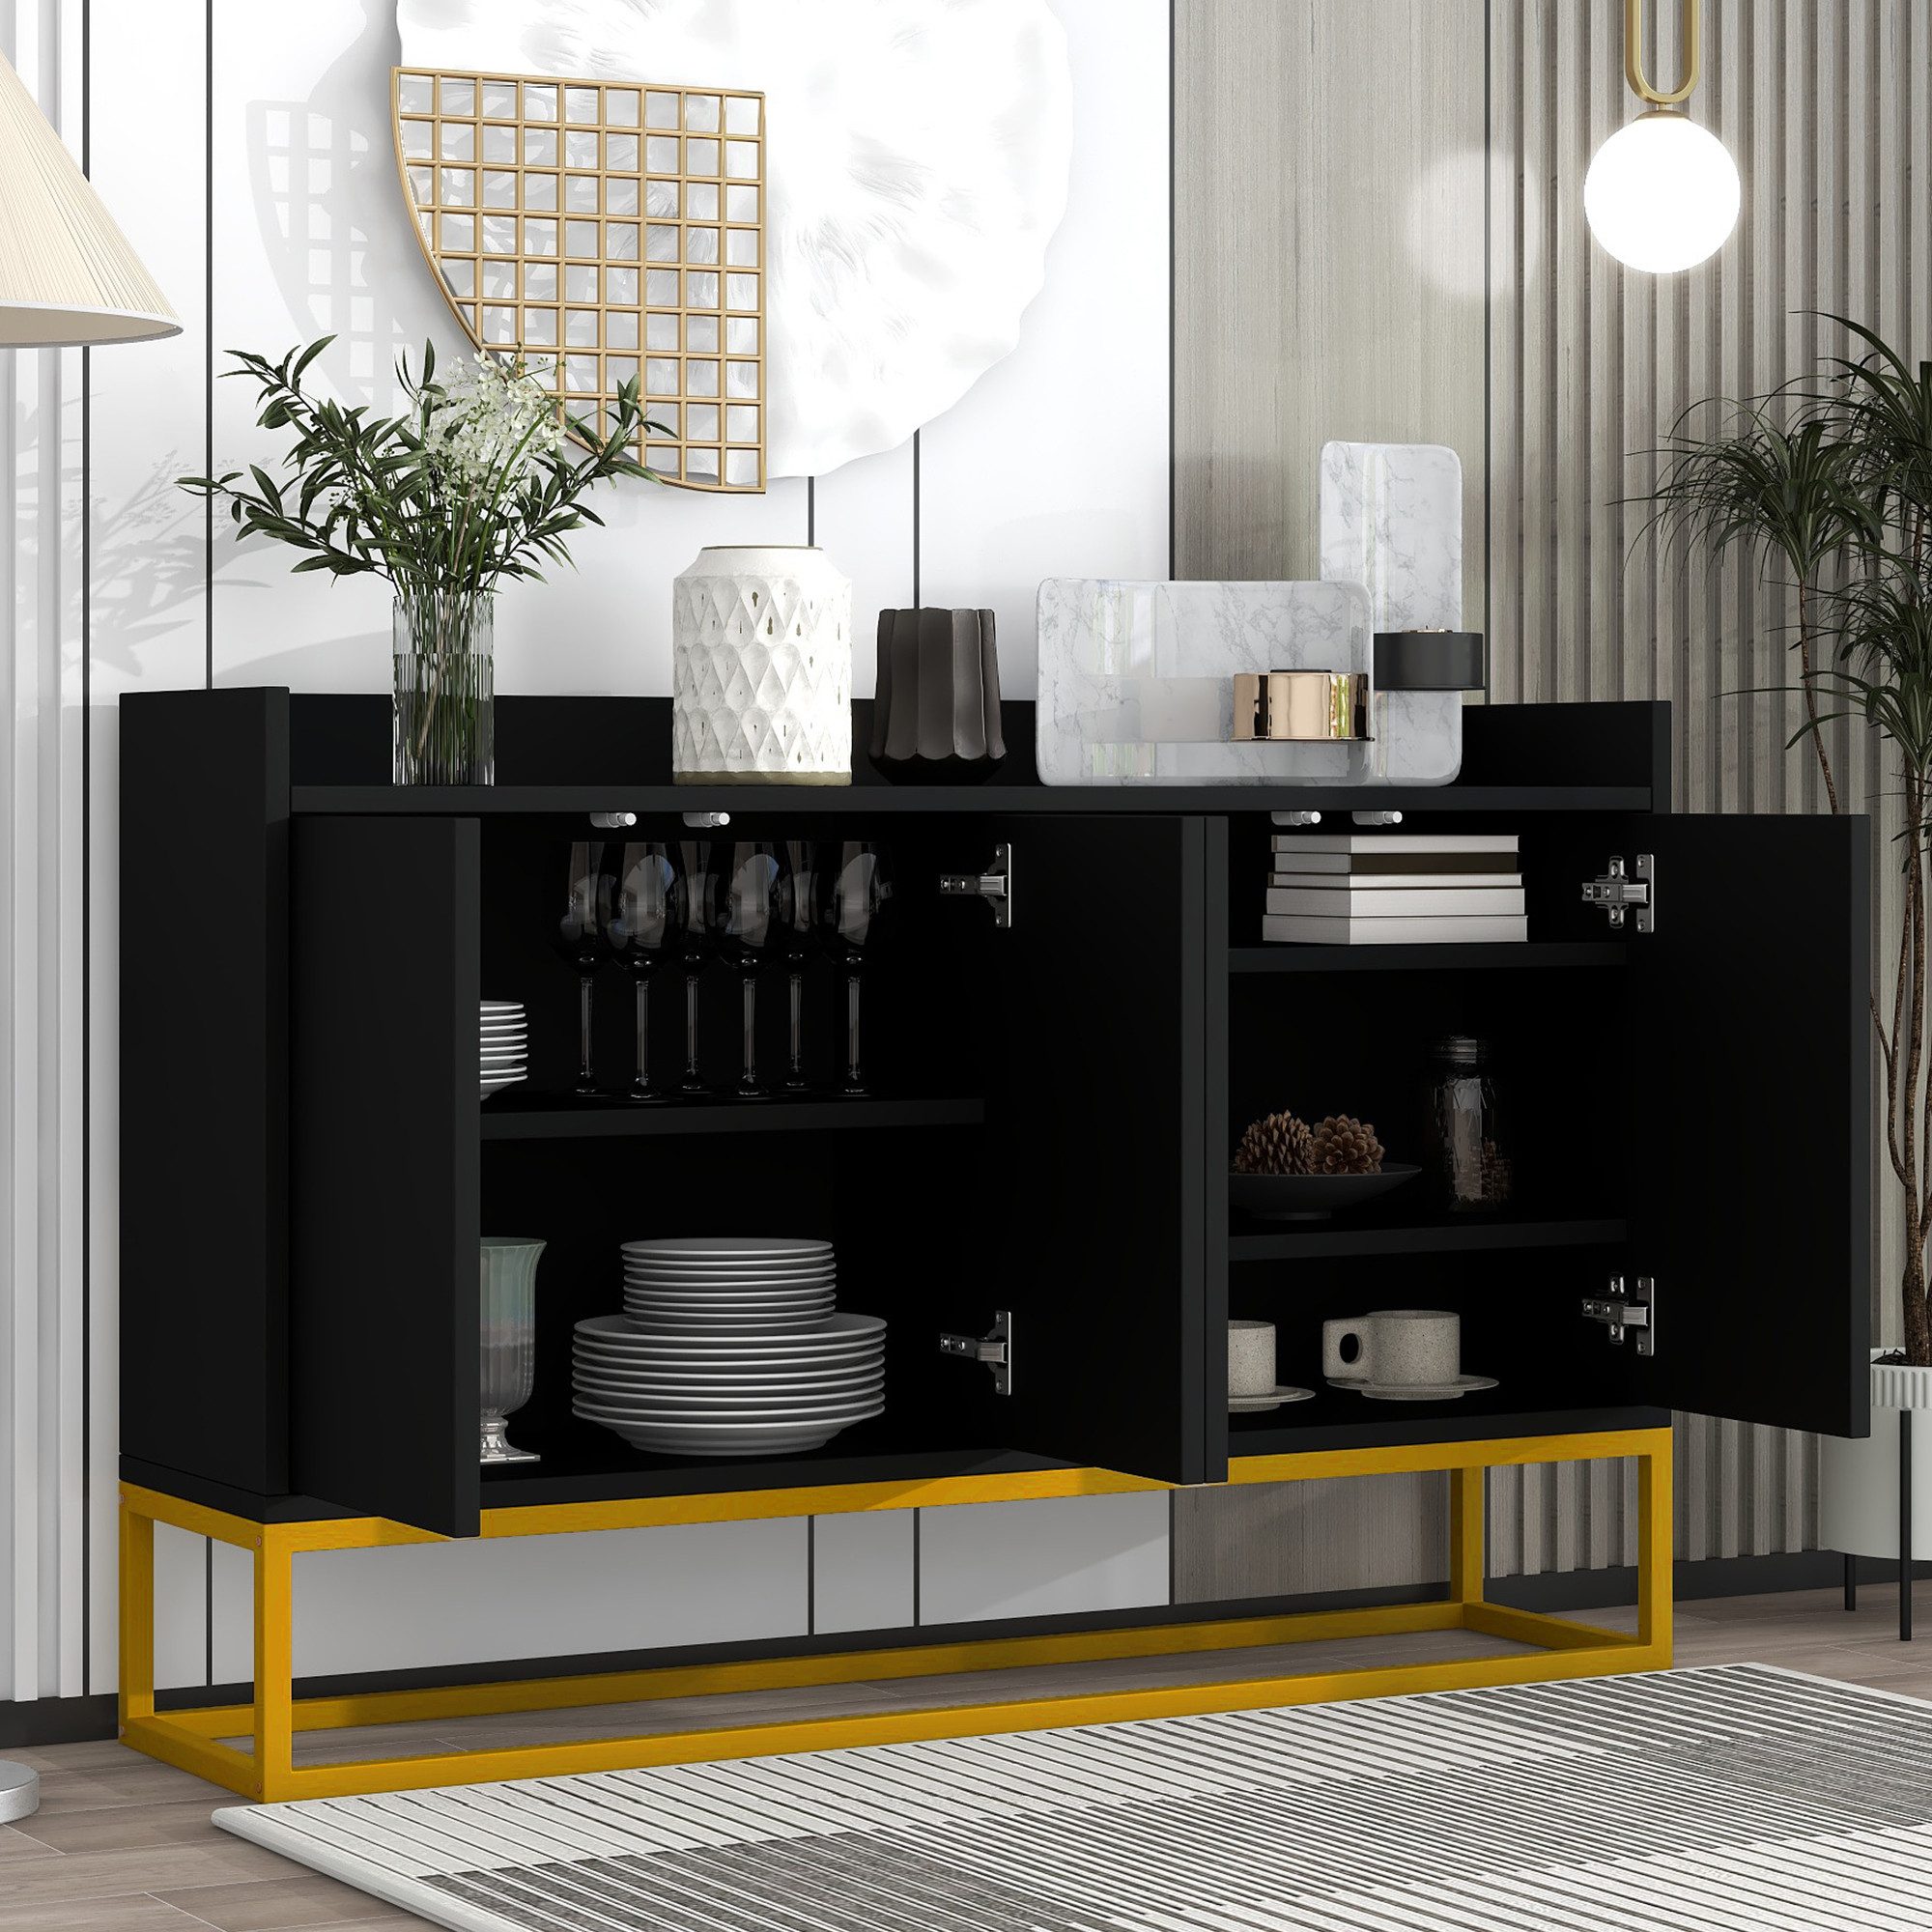 OKWISH Sideboard Anrichte, Modernes Küchenschrank im minimalistischen Stil 4-türiger (griffloser Buffetschrank für Esszimmer, Wohnzimmer, Küche)